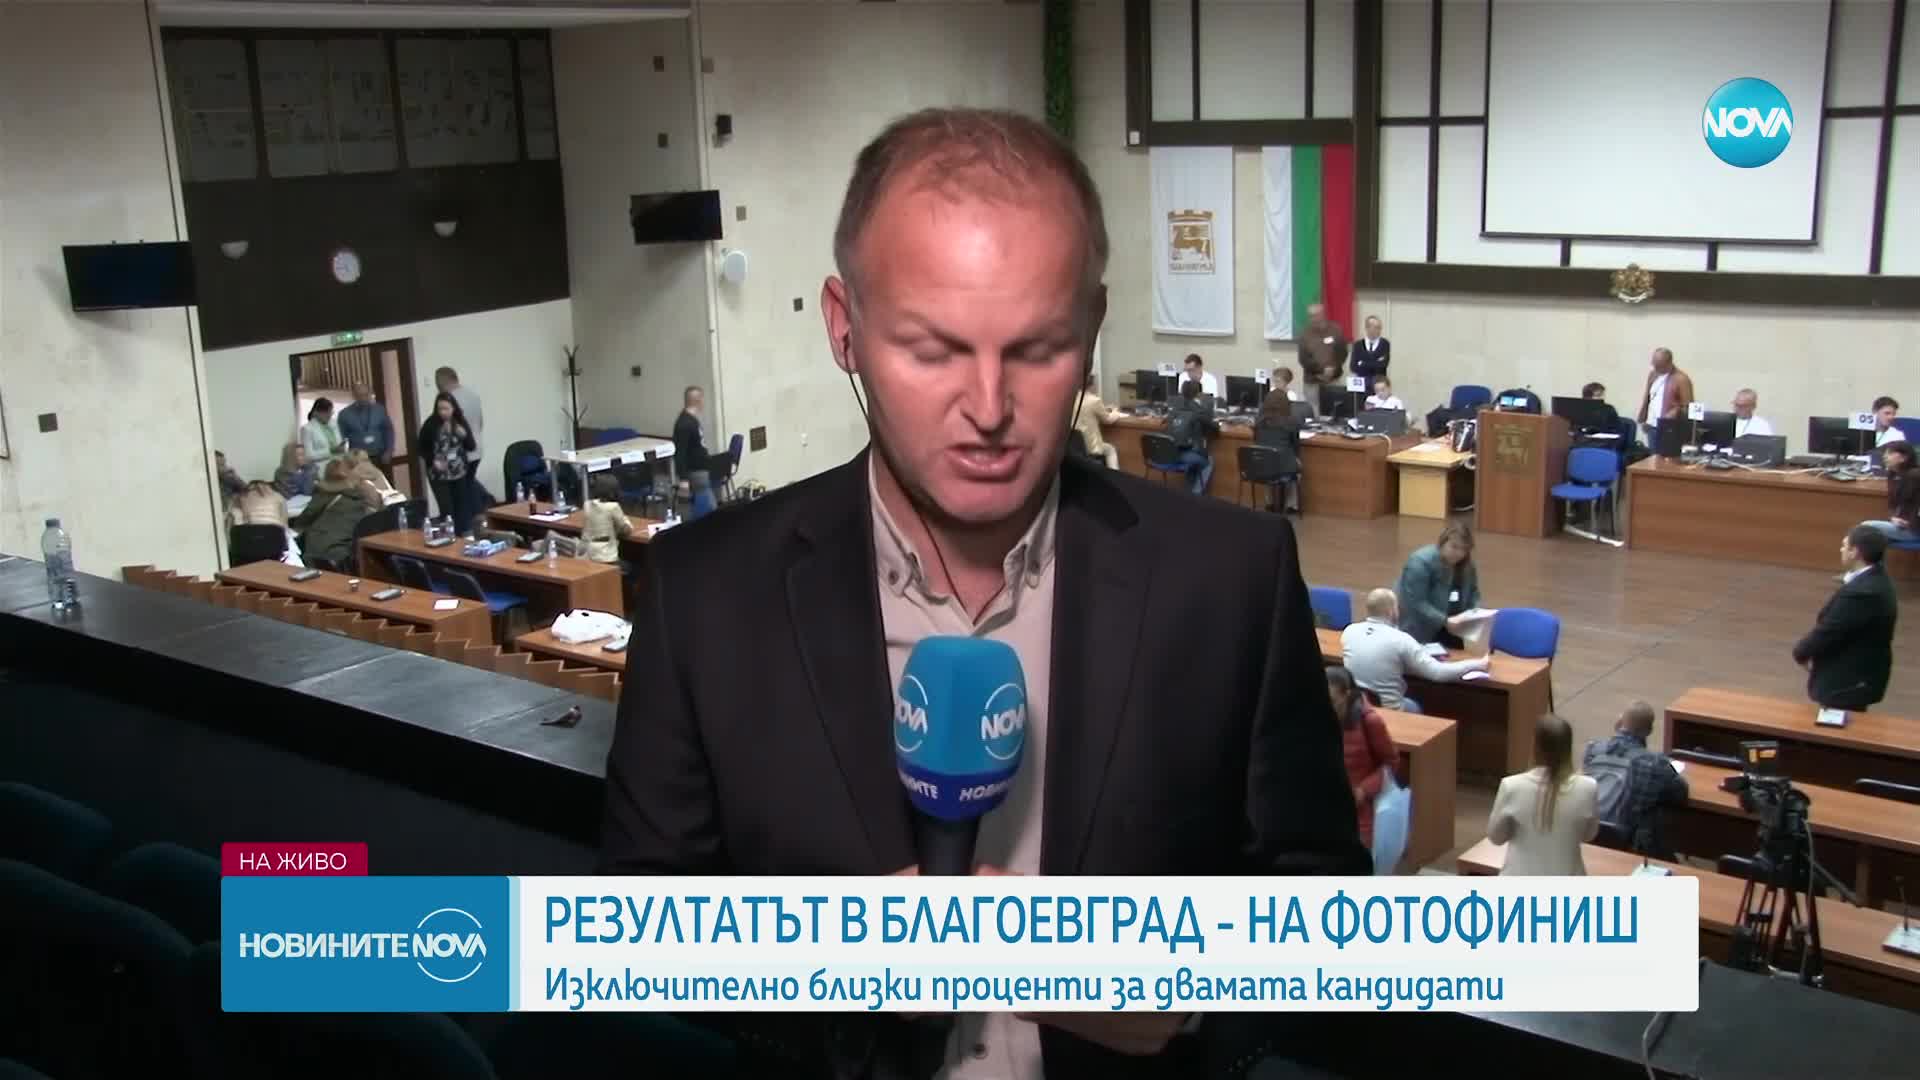 Методи Байкушев: Имаме още да свършим много работа, трябва да опазим вота